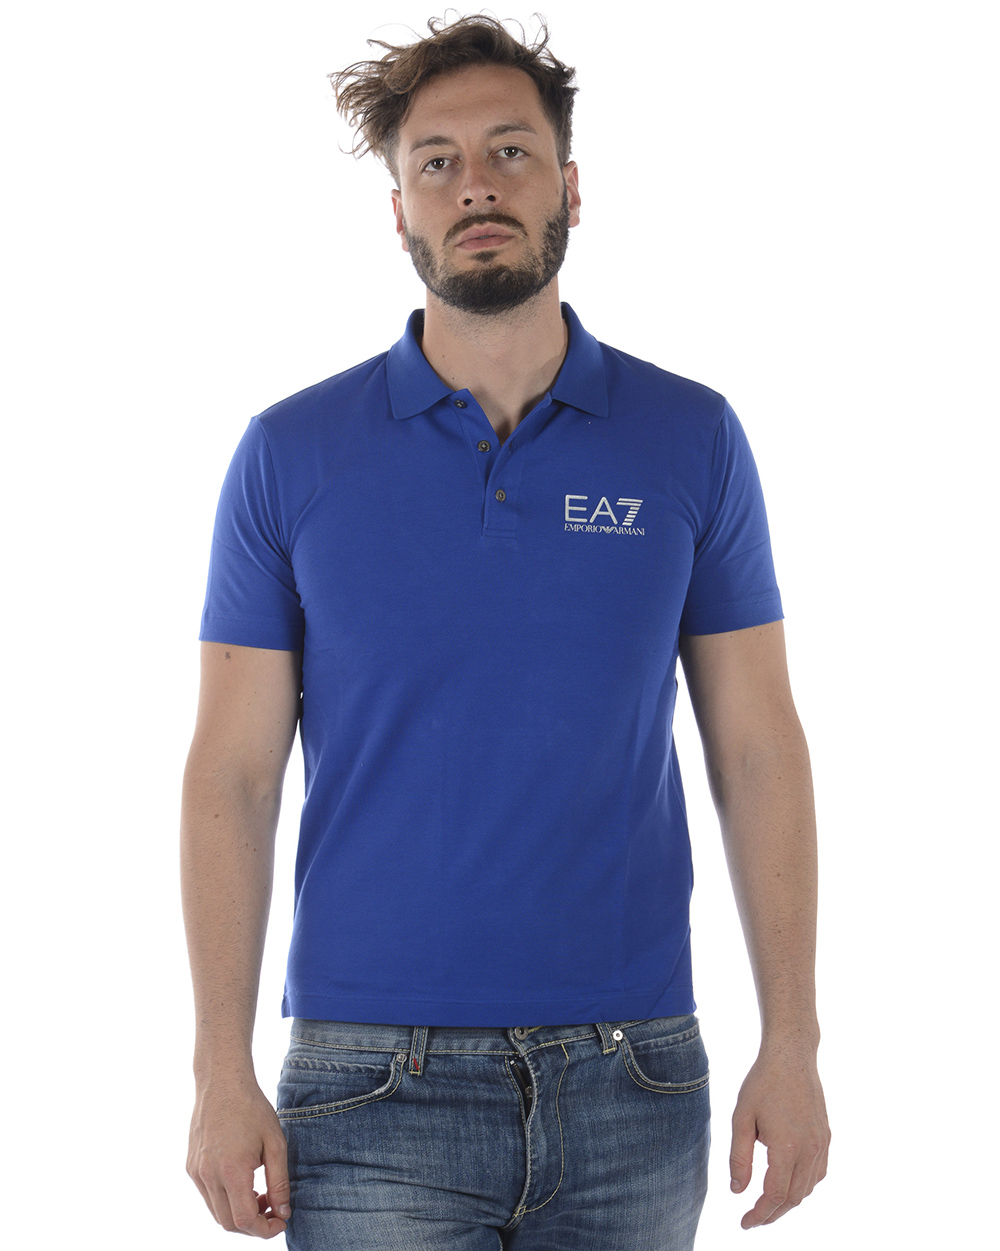 Emporio Armani EA7 Polo Shirt Cotton Man Blue 3ZPF52PJ04Z 1570 Sz XXL MAKE OFFER